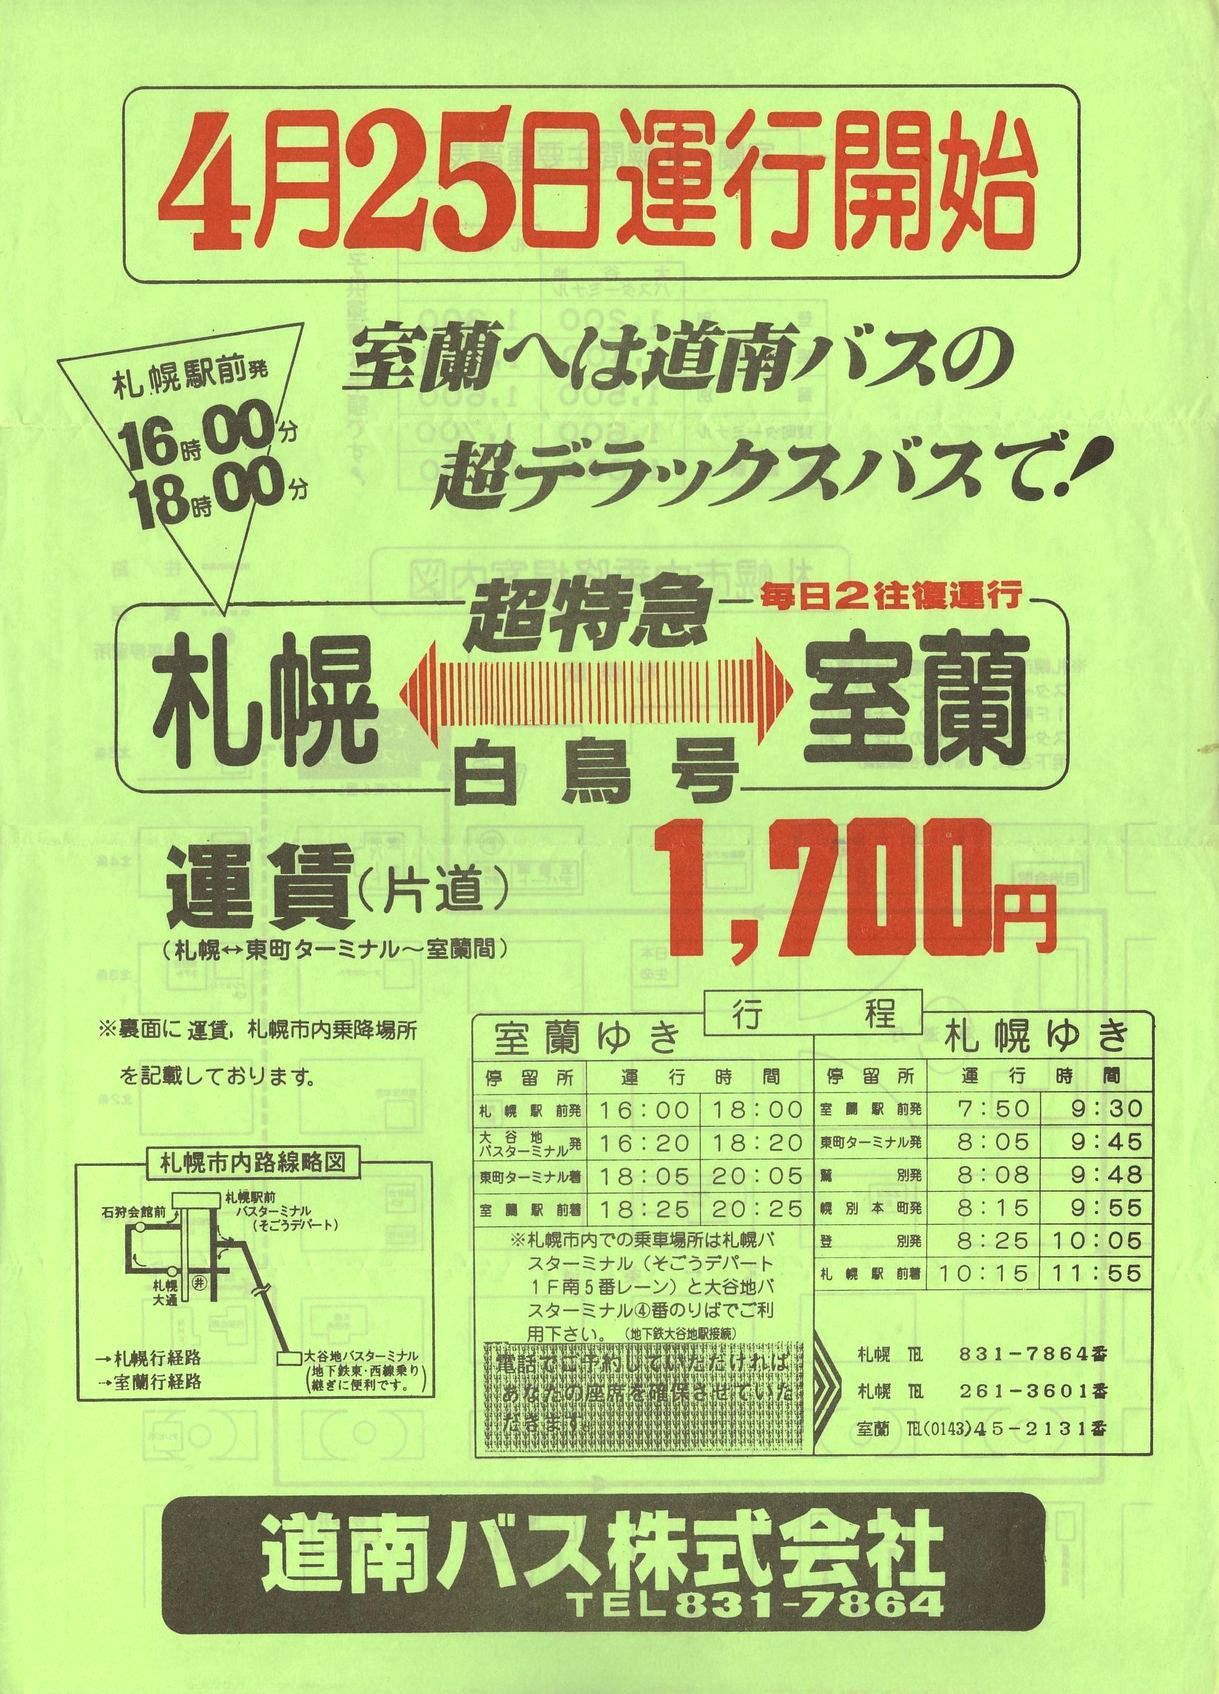 1984-04-25改正_道南バス_超特急白鳥号チラシ表面